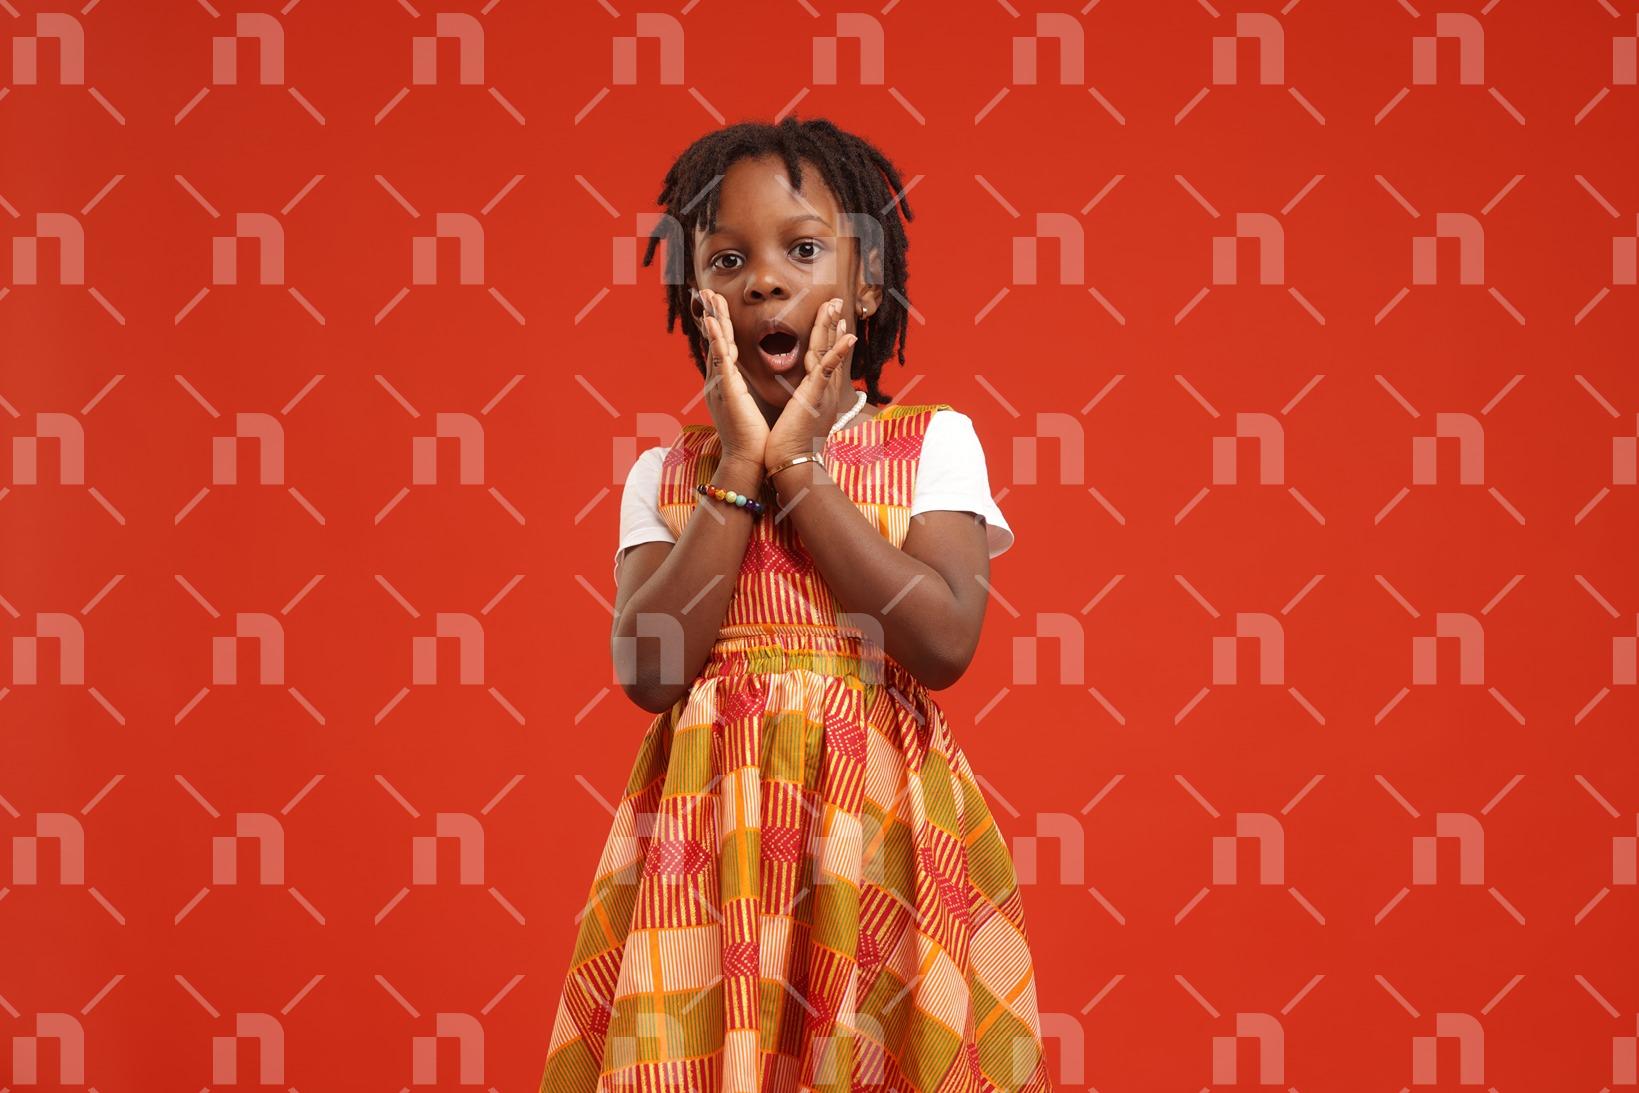 fillette-africaine-moderne-vetue-dune-robe-de-couleur-orange-posant-avec-les-mains-jointes-autour-de-la-bouche-et-les-yeux-grands-ouverts-en-signe-detonnement-pour-une-photo-studio